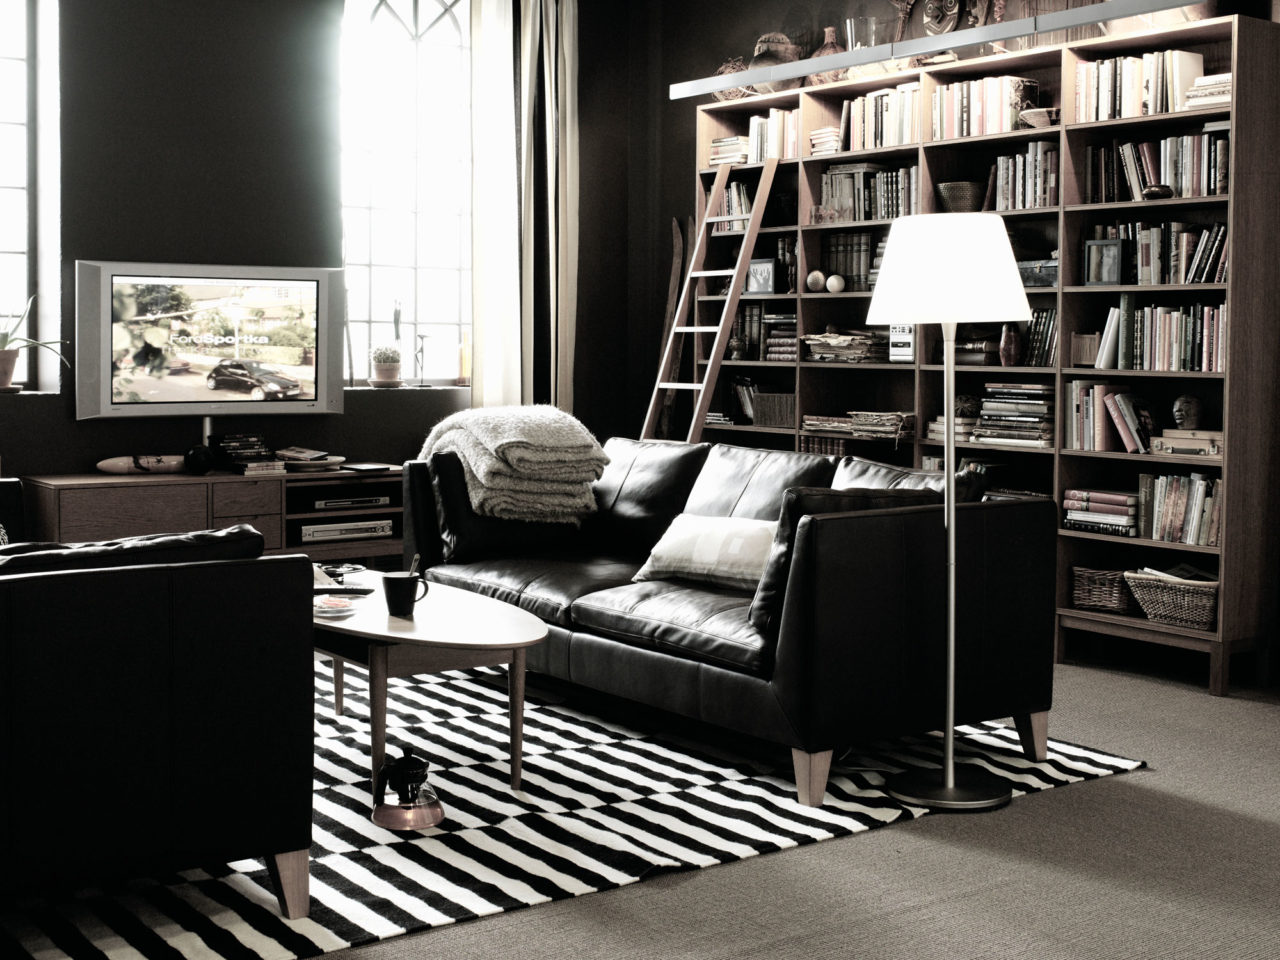 Vardagsrum med mörkgröna väggar, två svarta soffor och ovalt soffbord. Hög bokhylla täcker ena väggen.